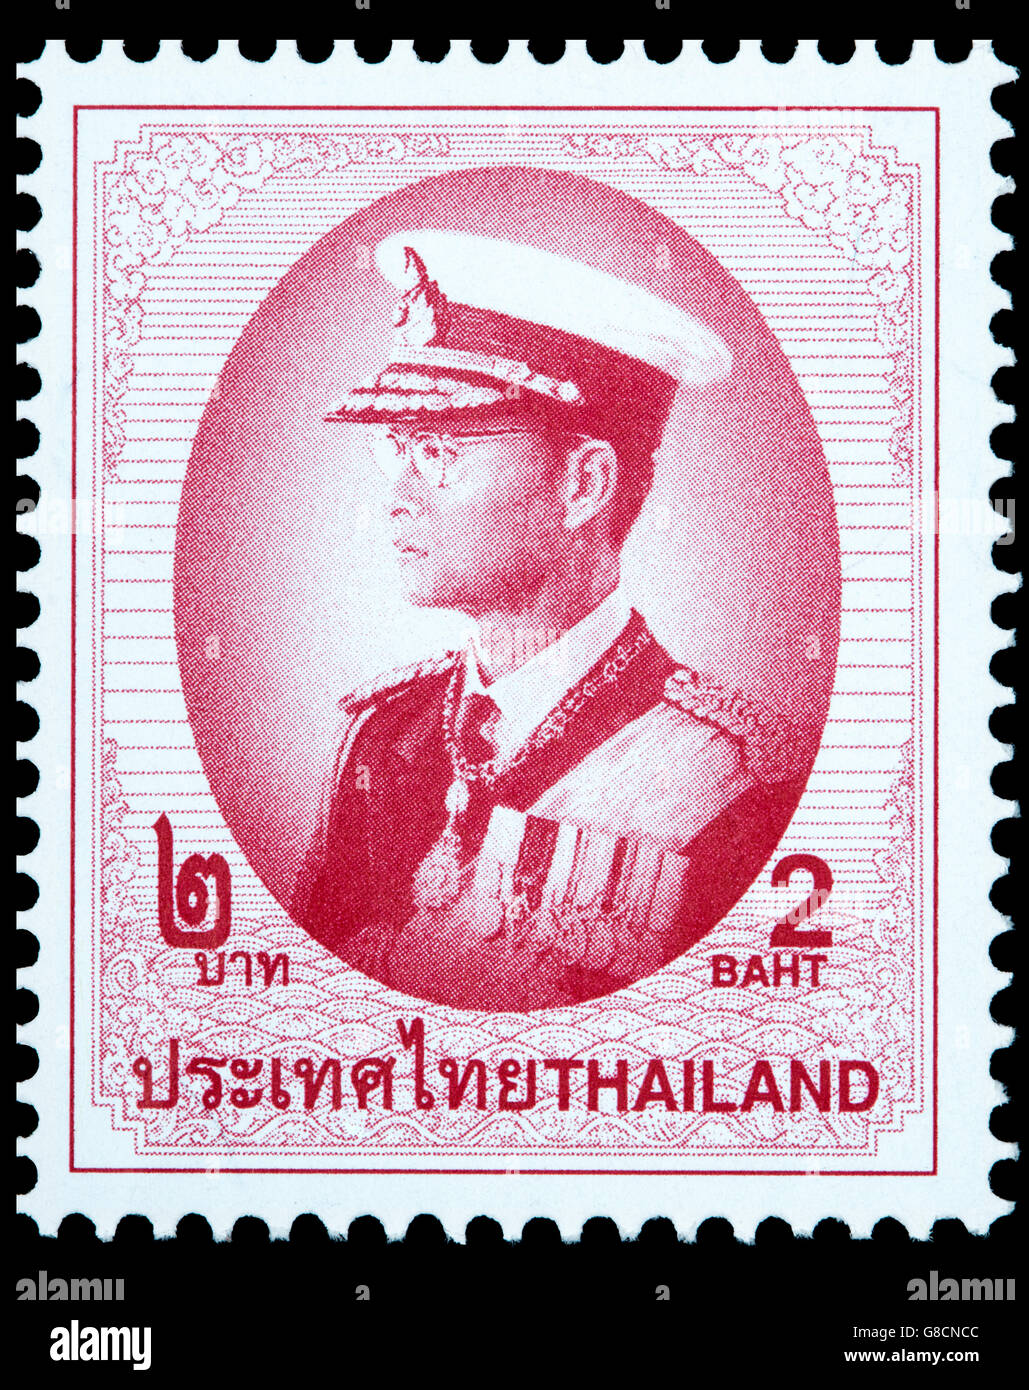 Un timbre-poste de Sa Majesté le Roi Bhumibol Adulyadej de Thaïlande Banque D'Images